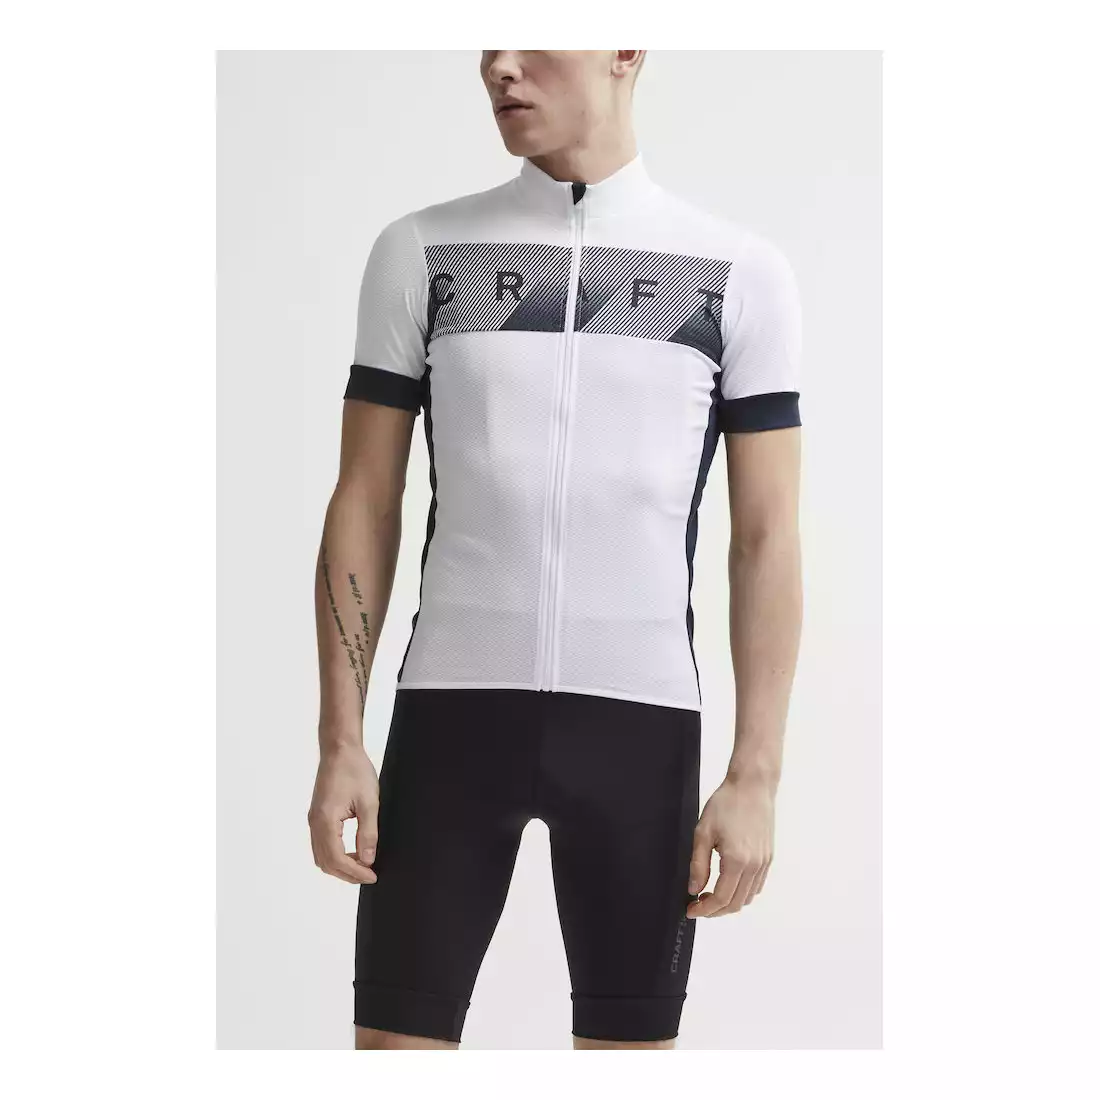 CRAFT REEL męska koszulka rowerowa, biała 1906096-900396